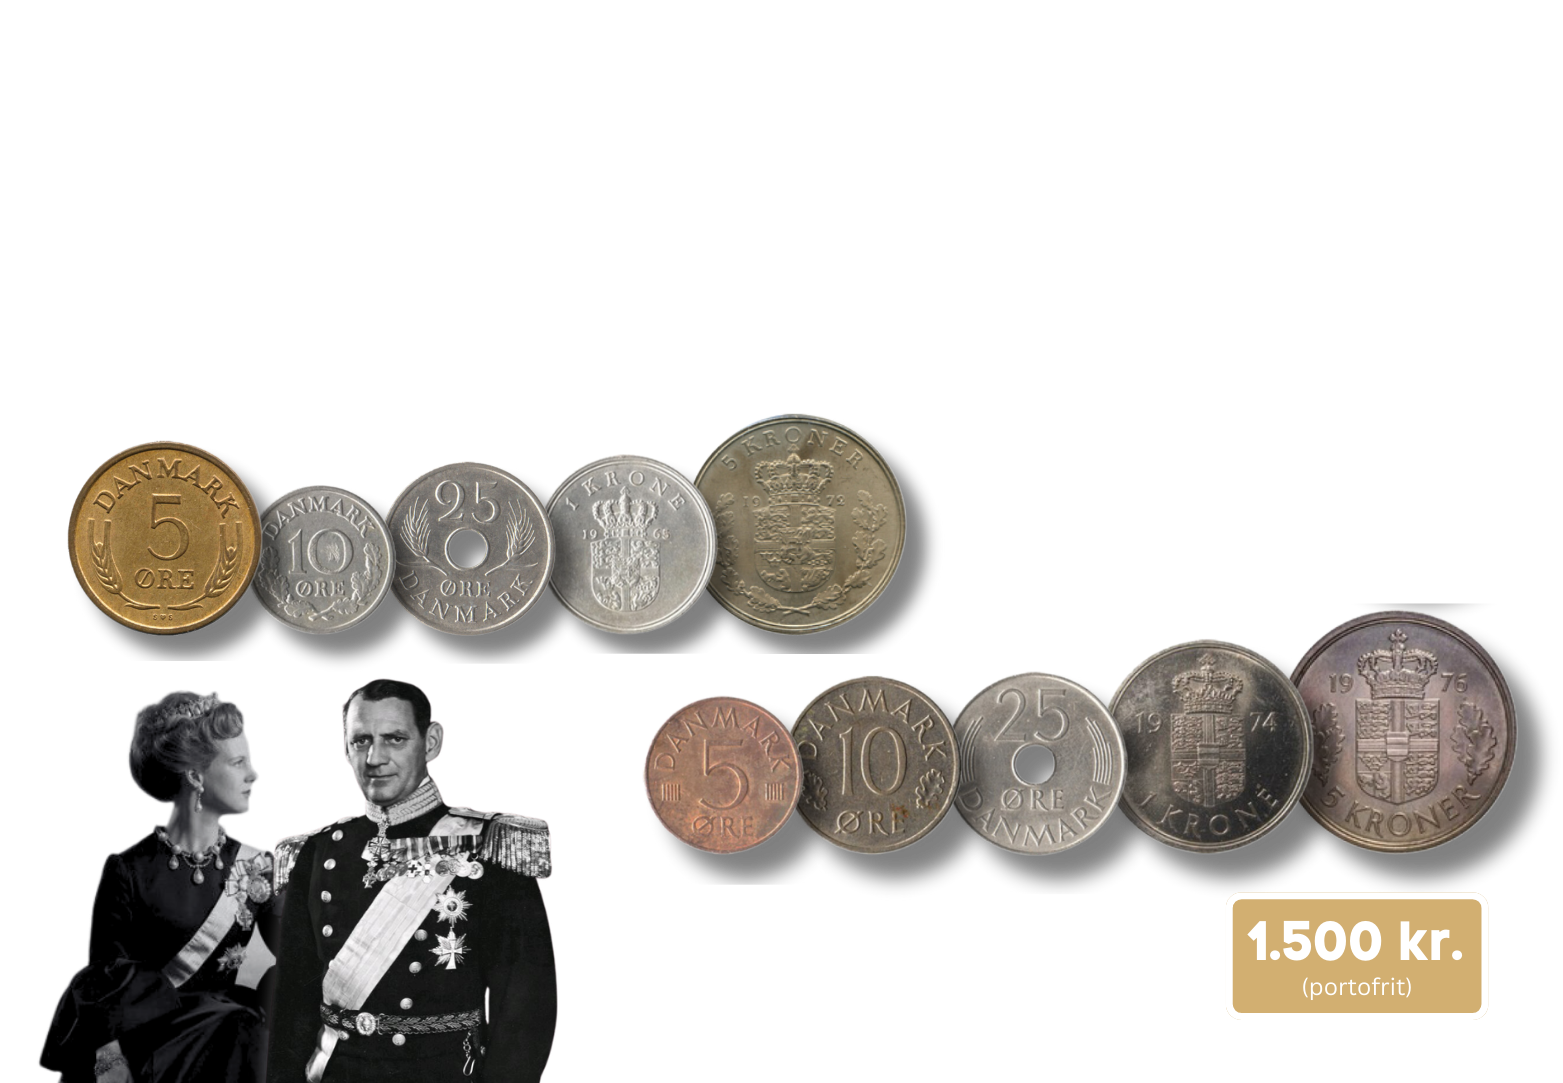 Frederik IX & Margrethe II Tronskiftesæt 